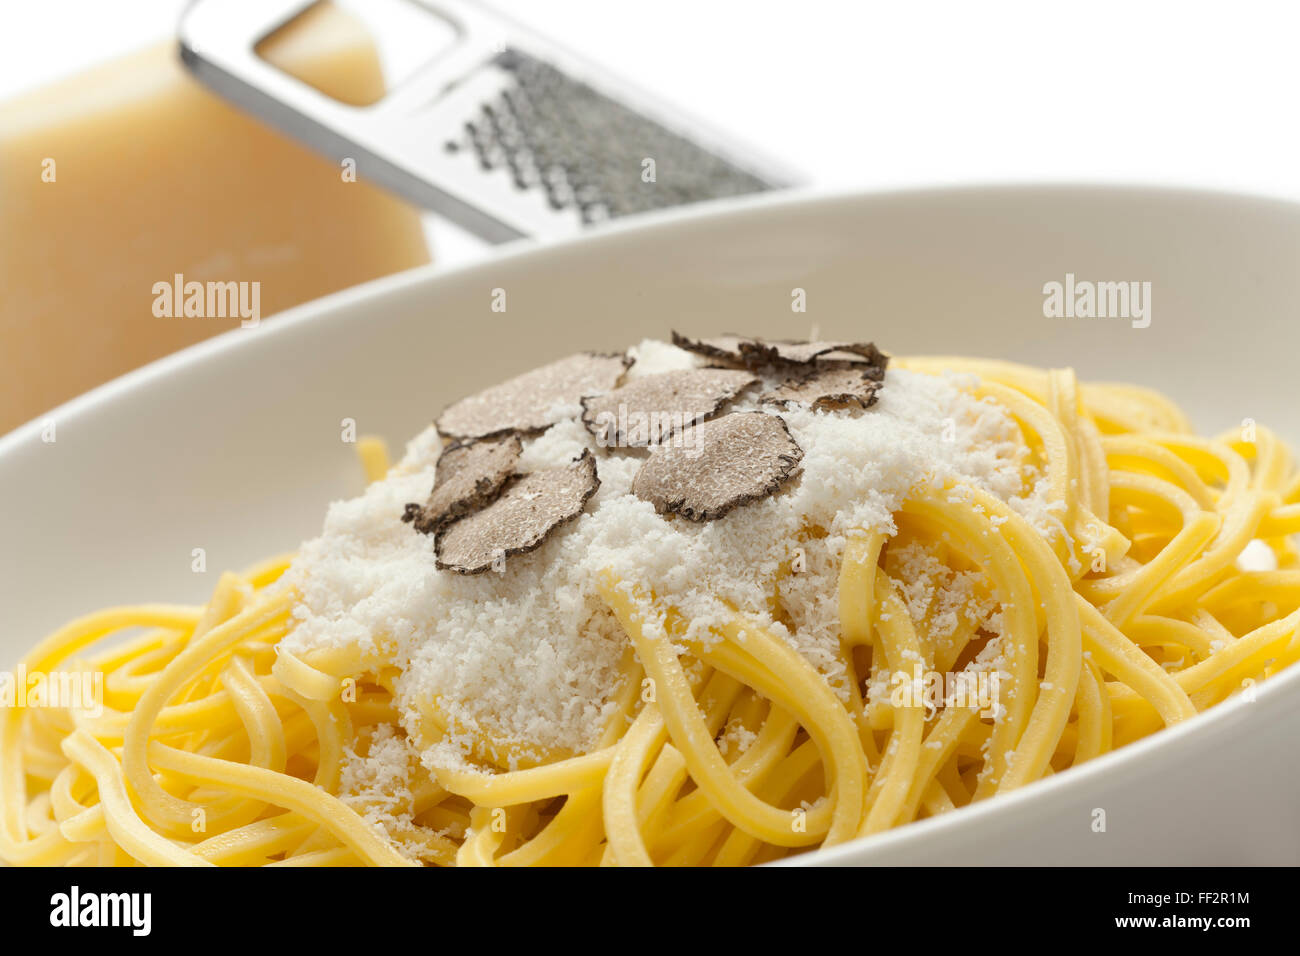 Spaghetti aux truffes noires et parmesan sur un plat Banque D'Images